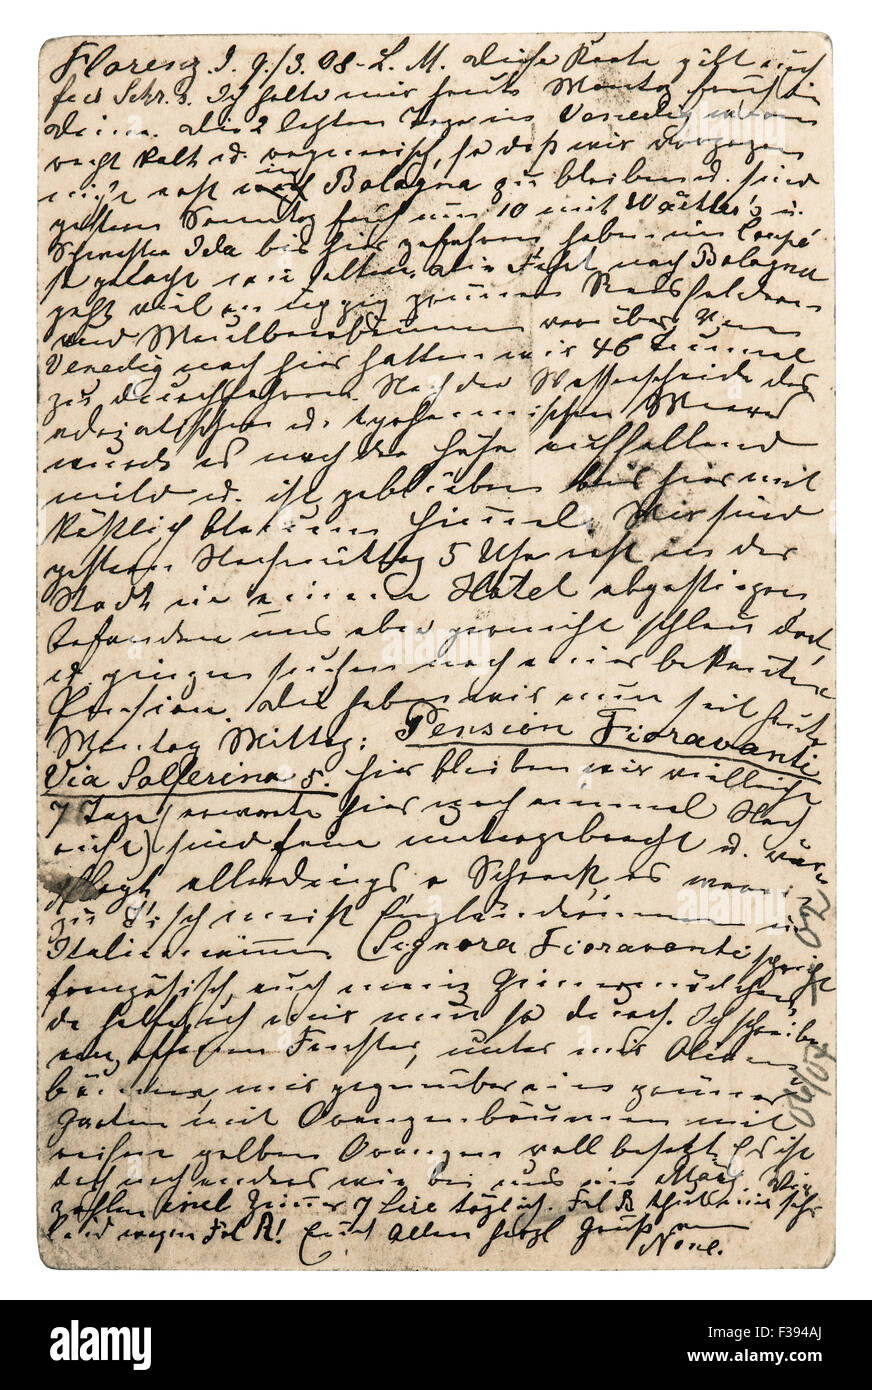 Ancienne lettre avec texte manuscrit. Vintage Grunge texture background Banque D'Images